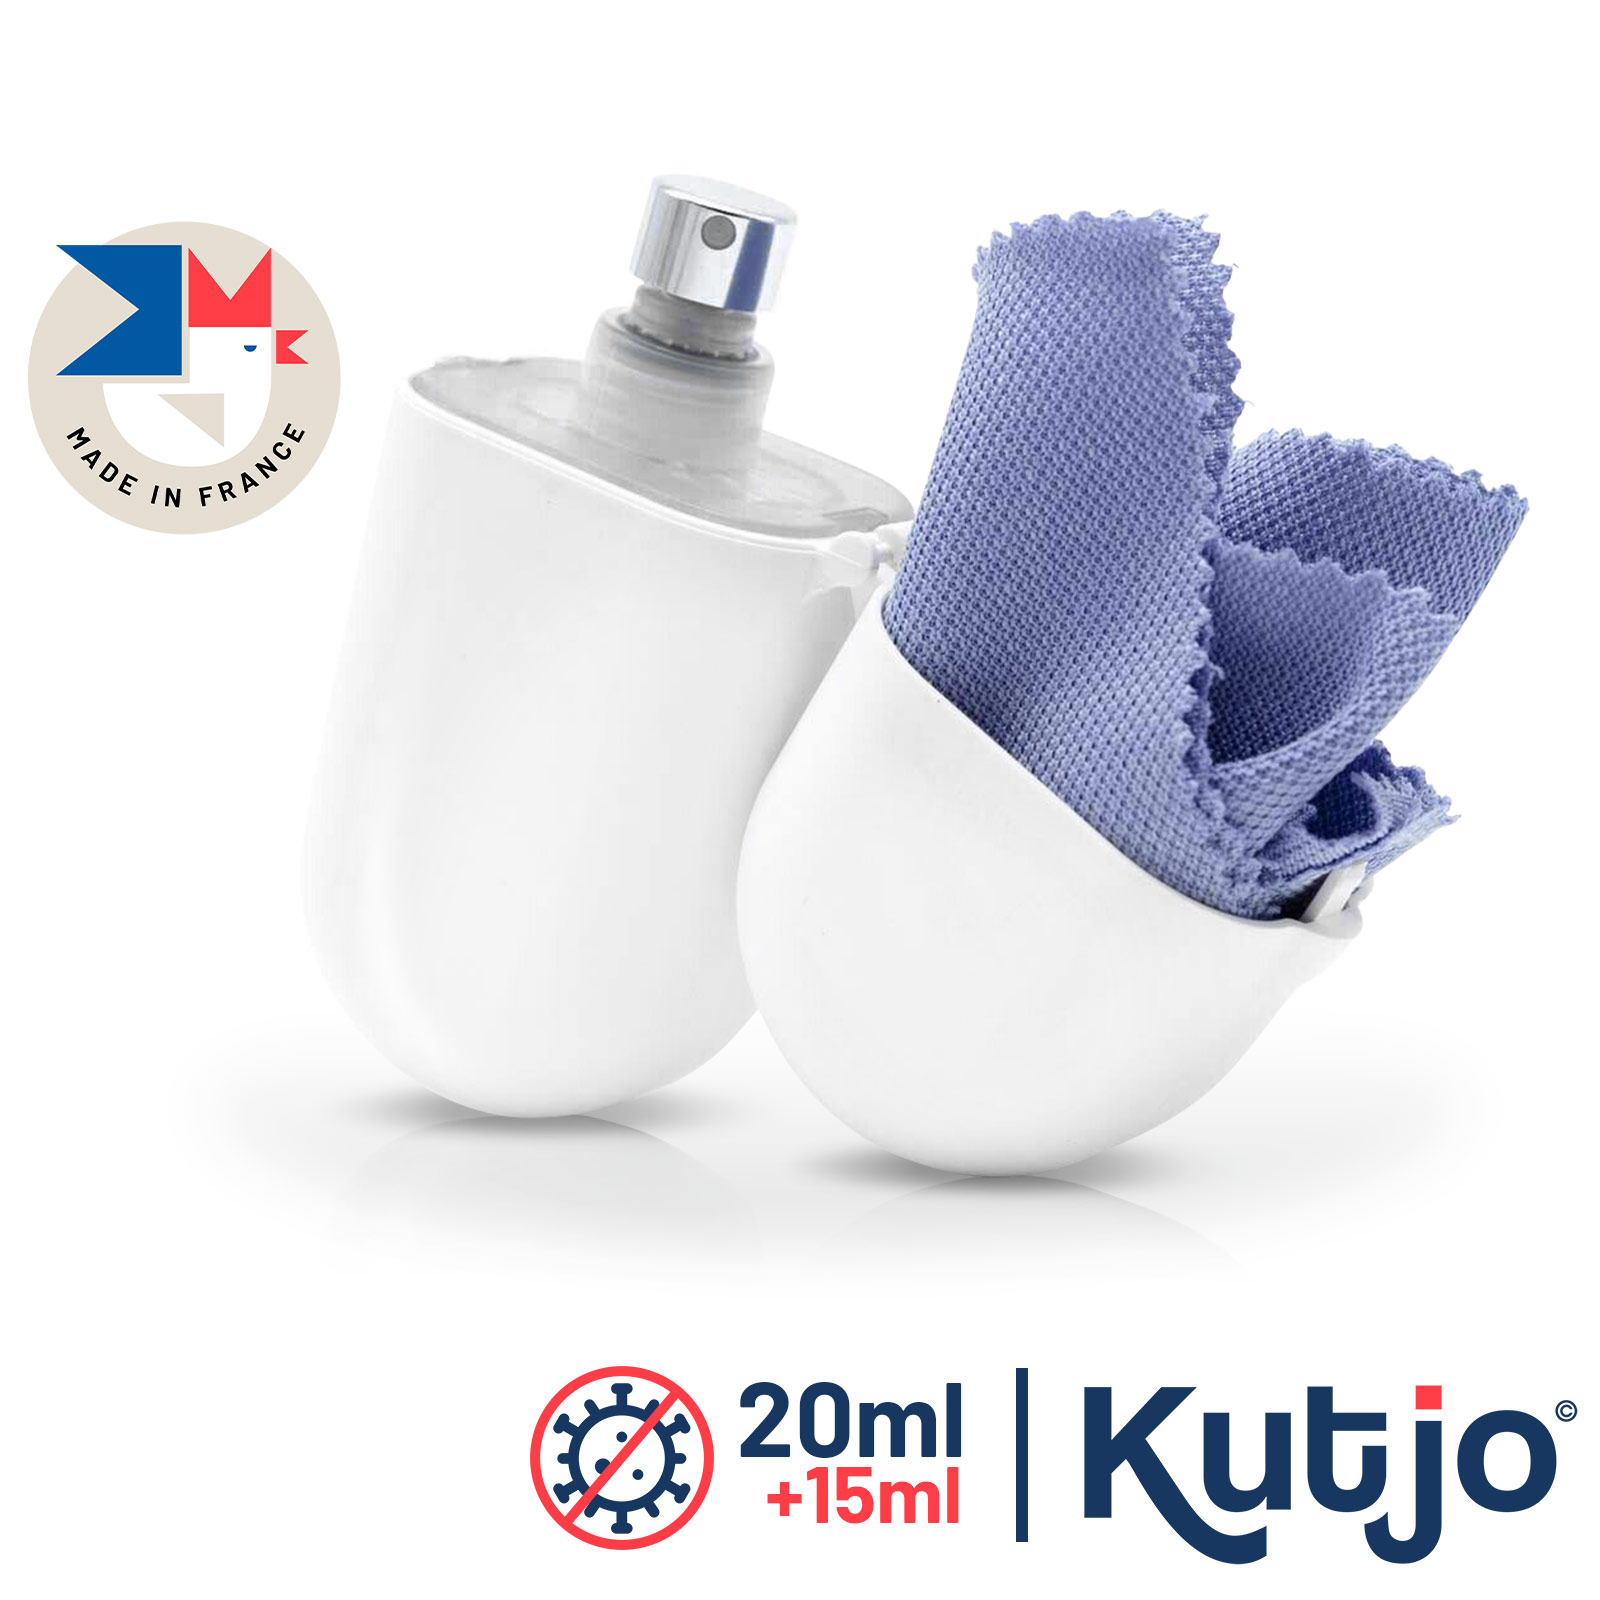 Comment nettoyer votre téléphone portable avec un kit de nettoyage Kutjo ?  - KUTJO